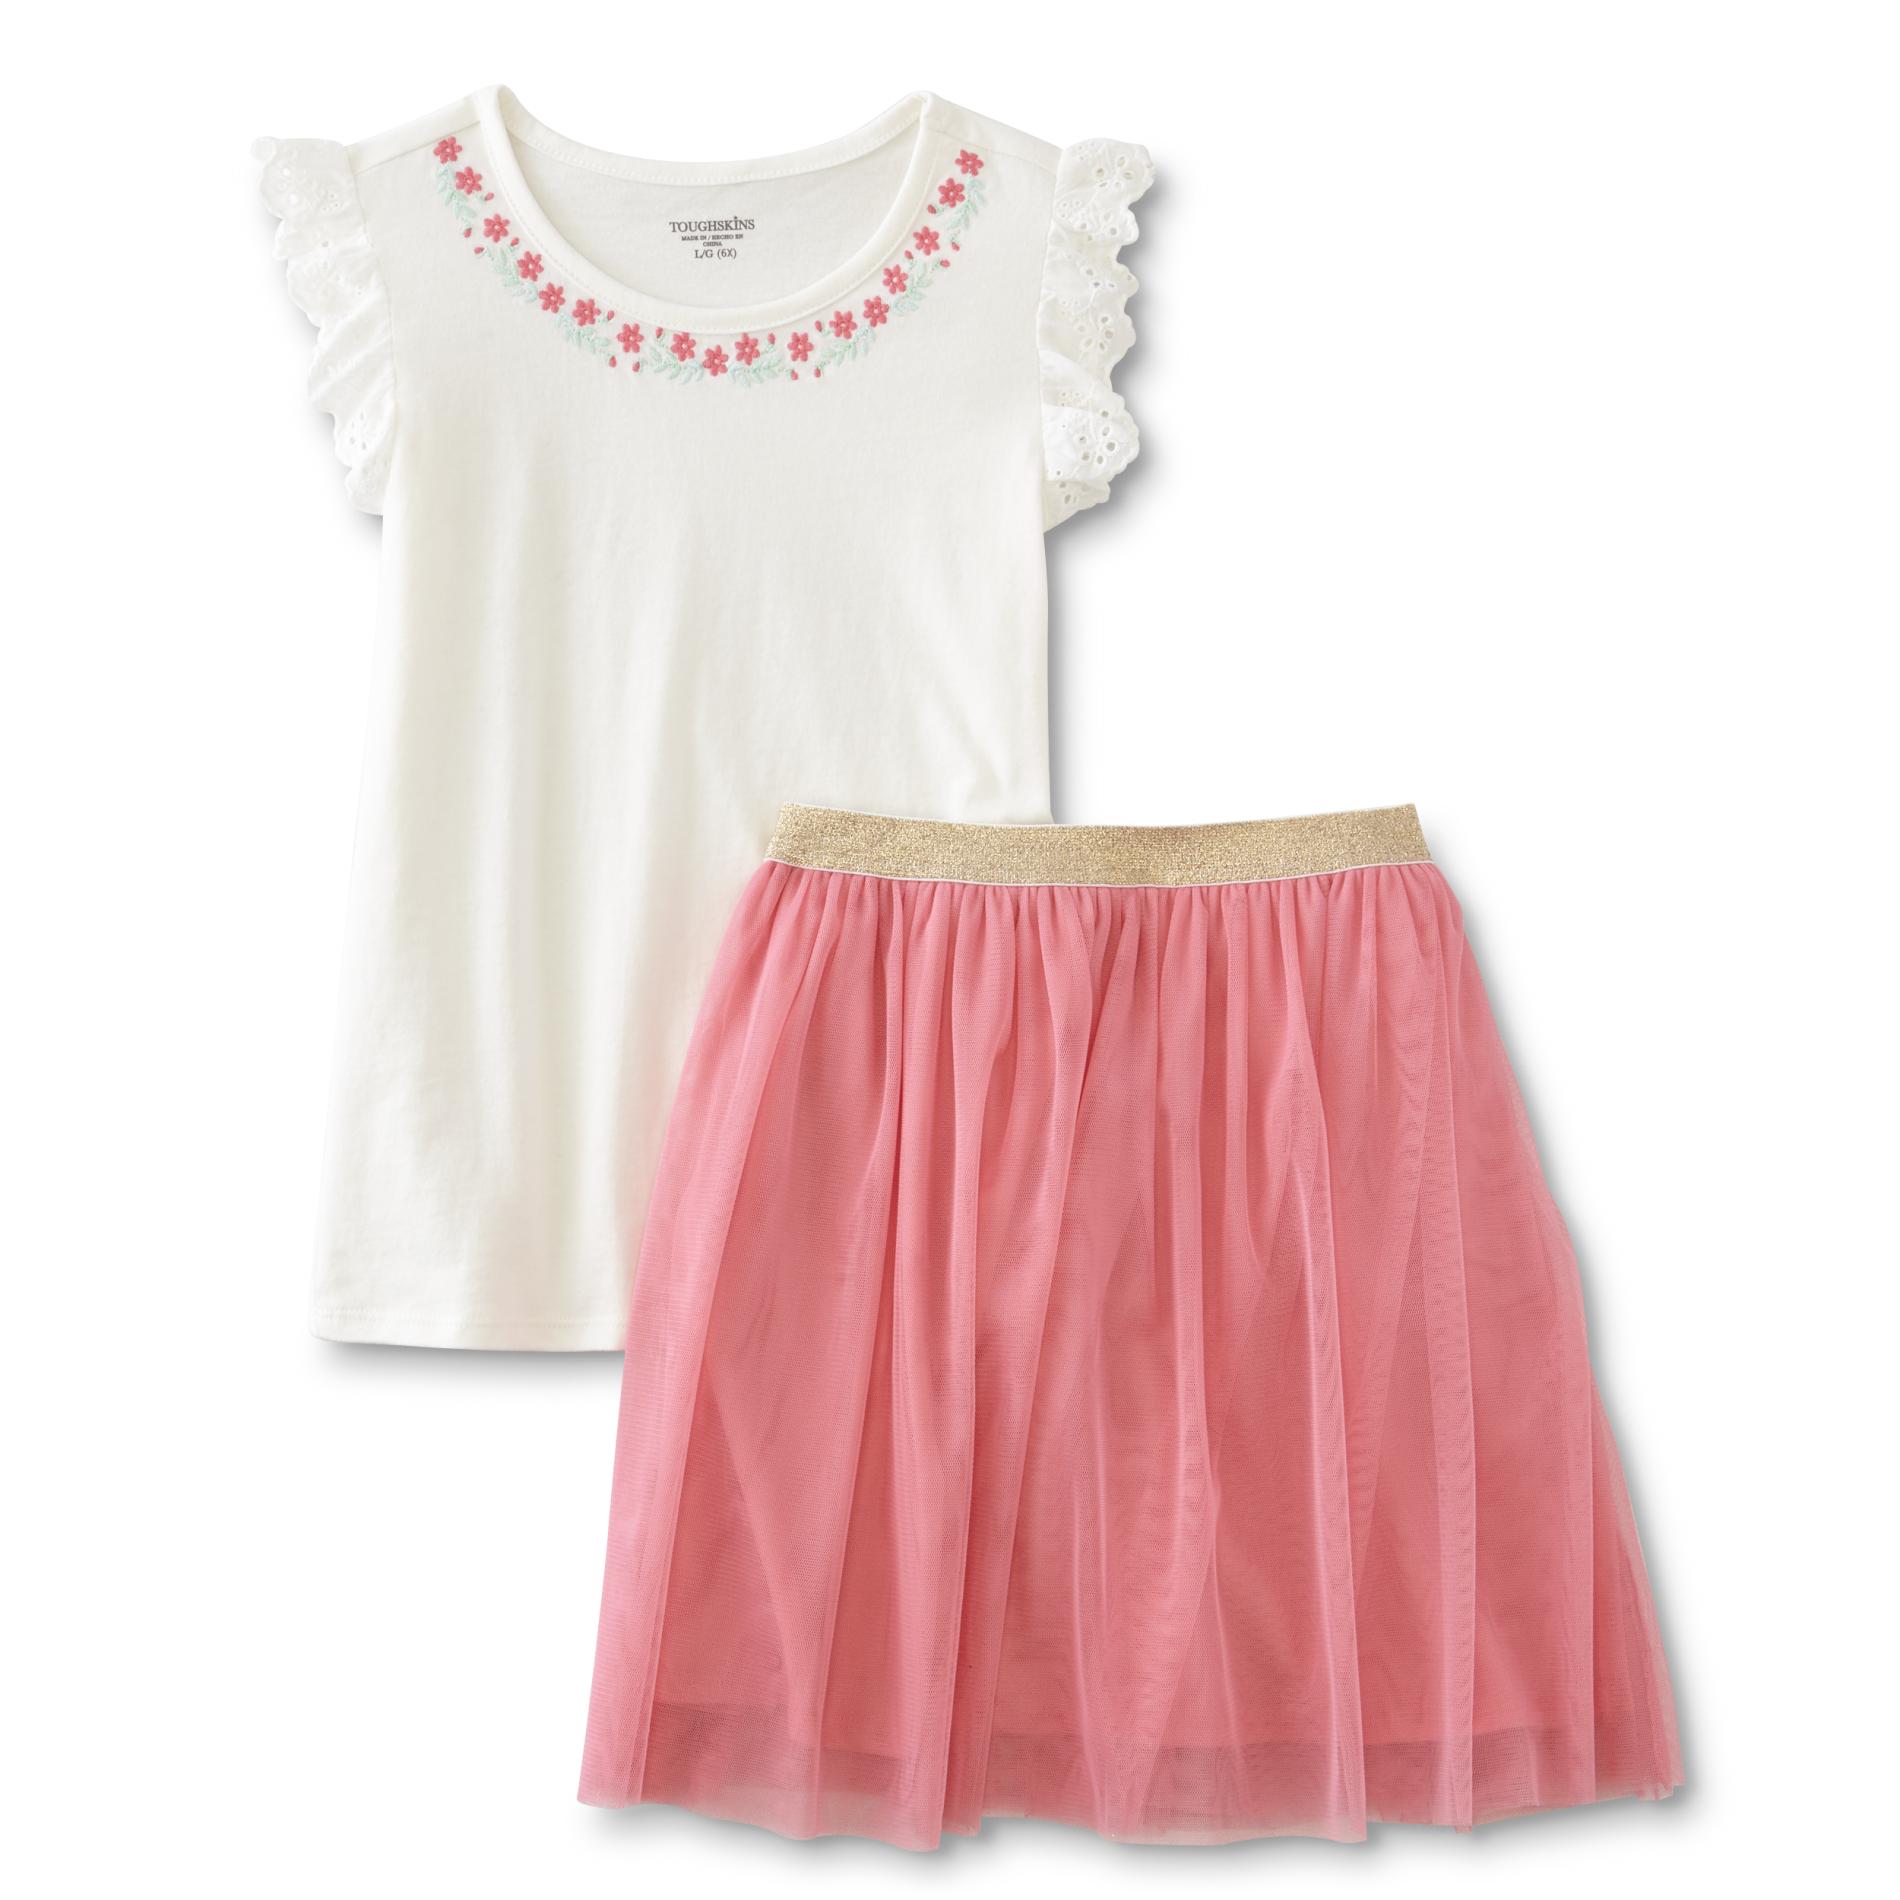 Toughskins Girls' T-Shirt & Skirt - Floral